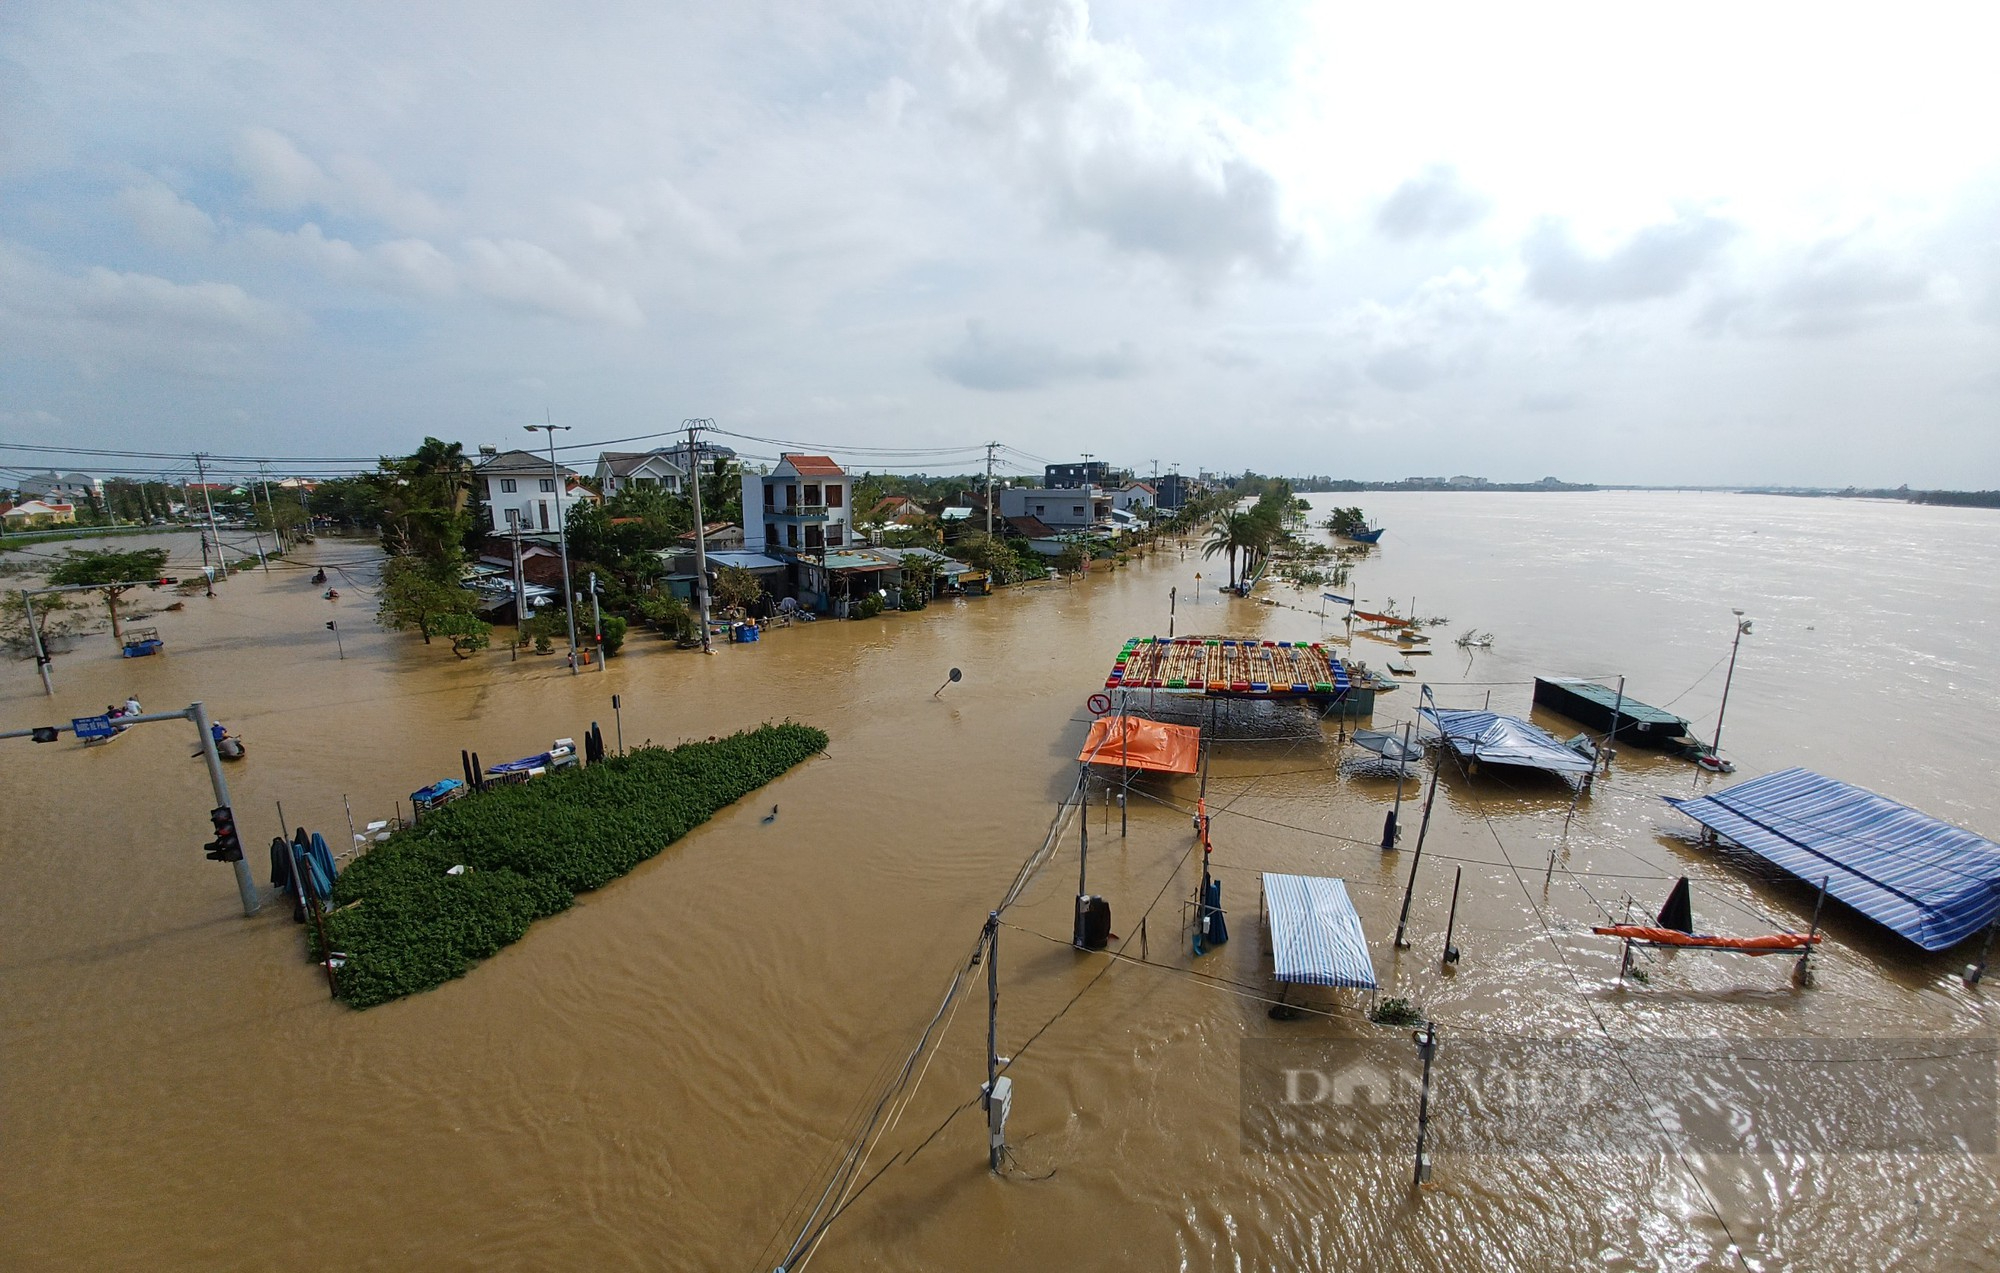 Quảng Nam: Nước sông dâng cao đạt đỉnh, nhiều vùng Điện Bàn, Hội An chìm trong lũ - Ảnh 1.